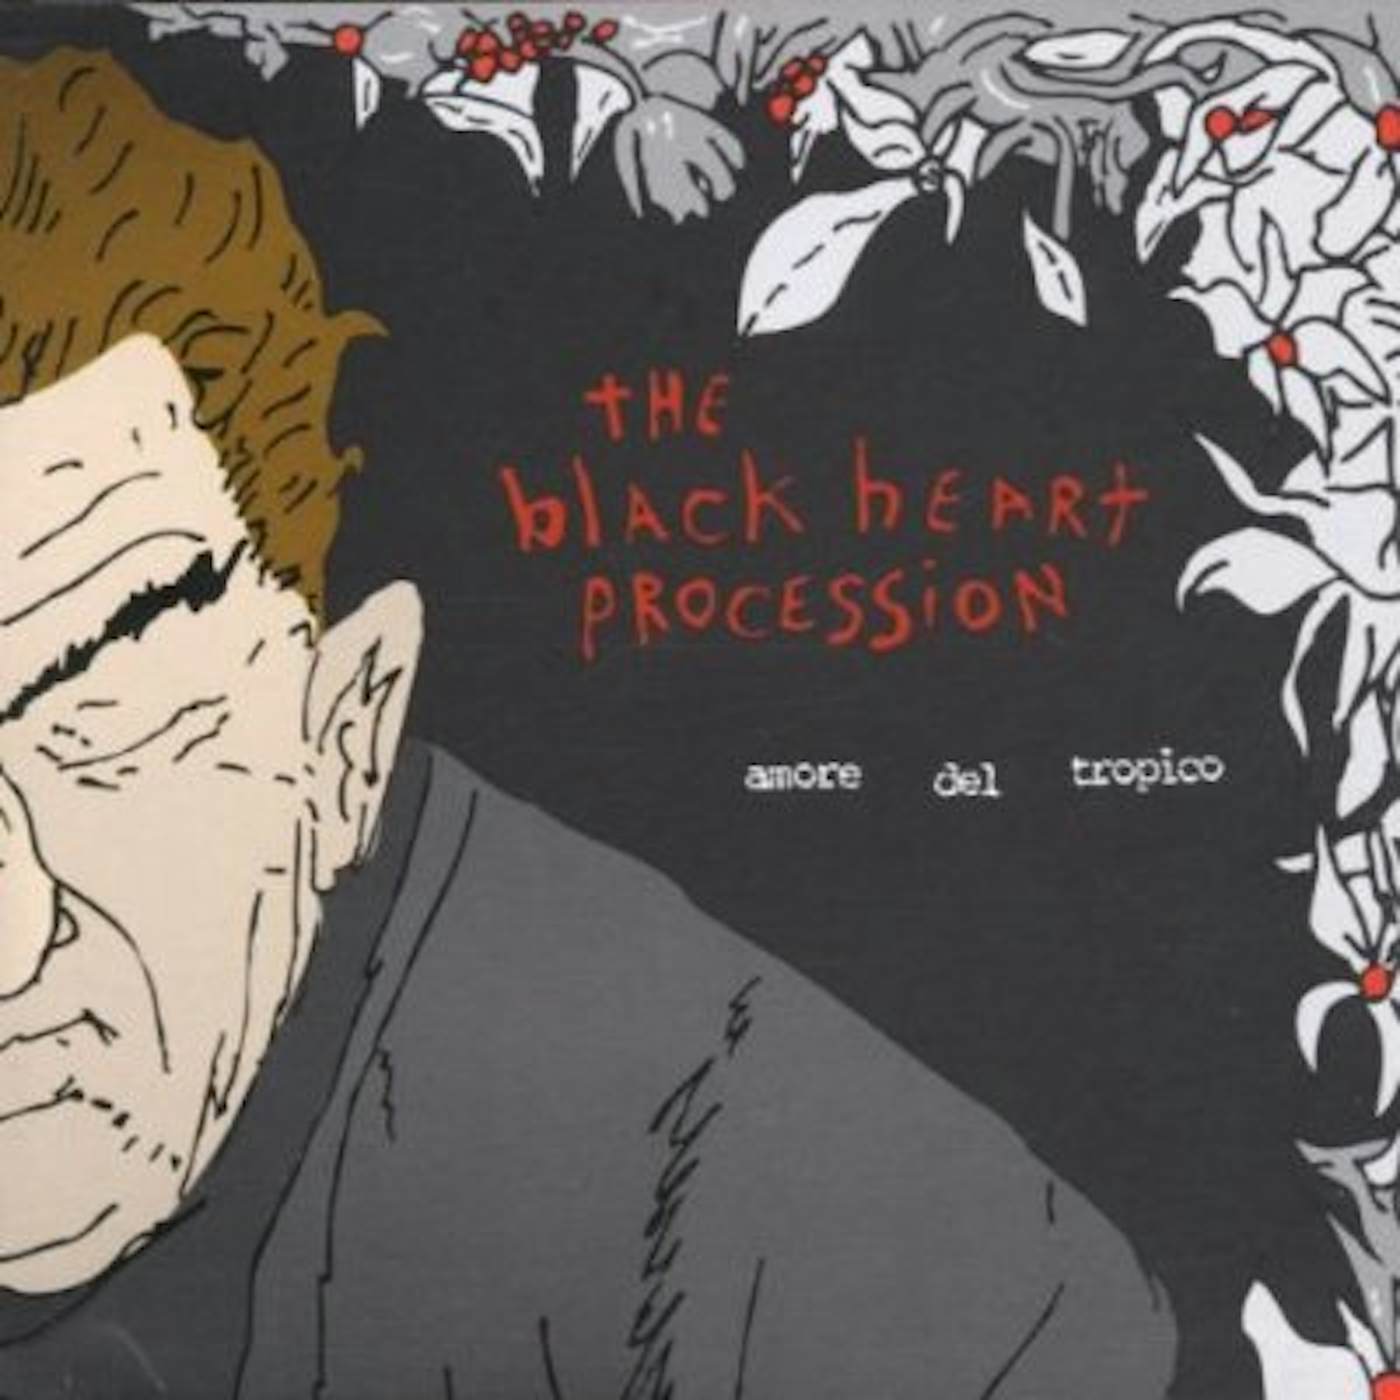 The Black Heart Procession AMORE DEL TROPICO CD